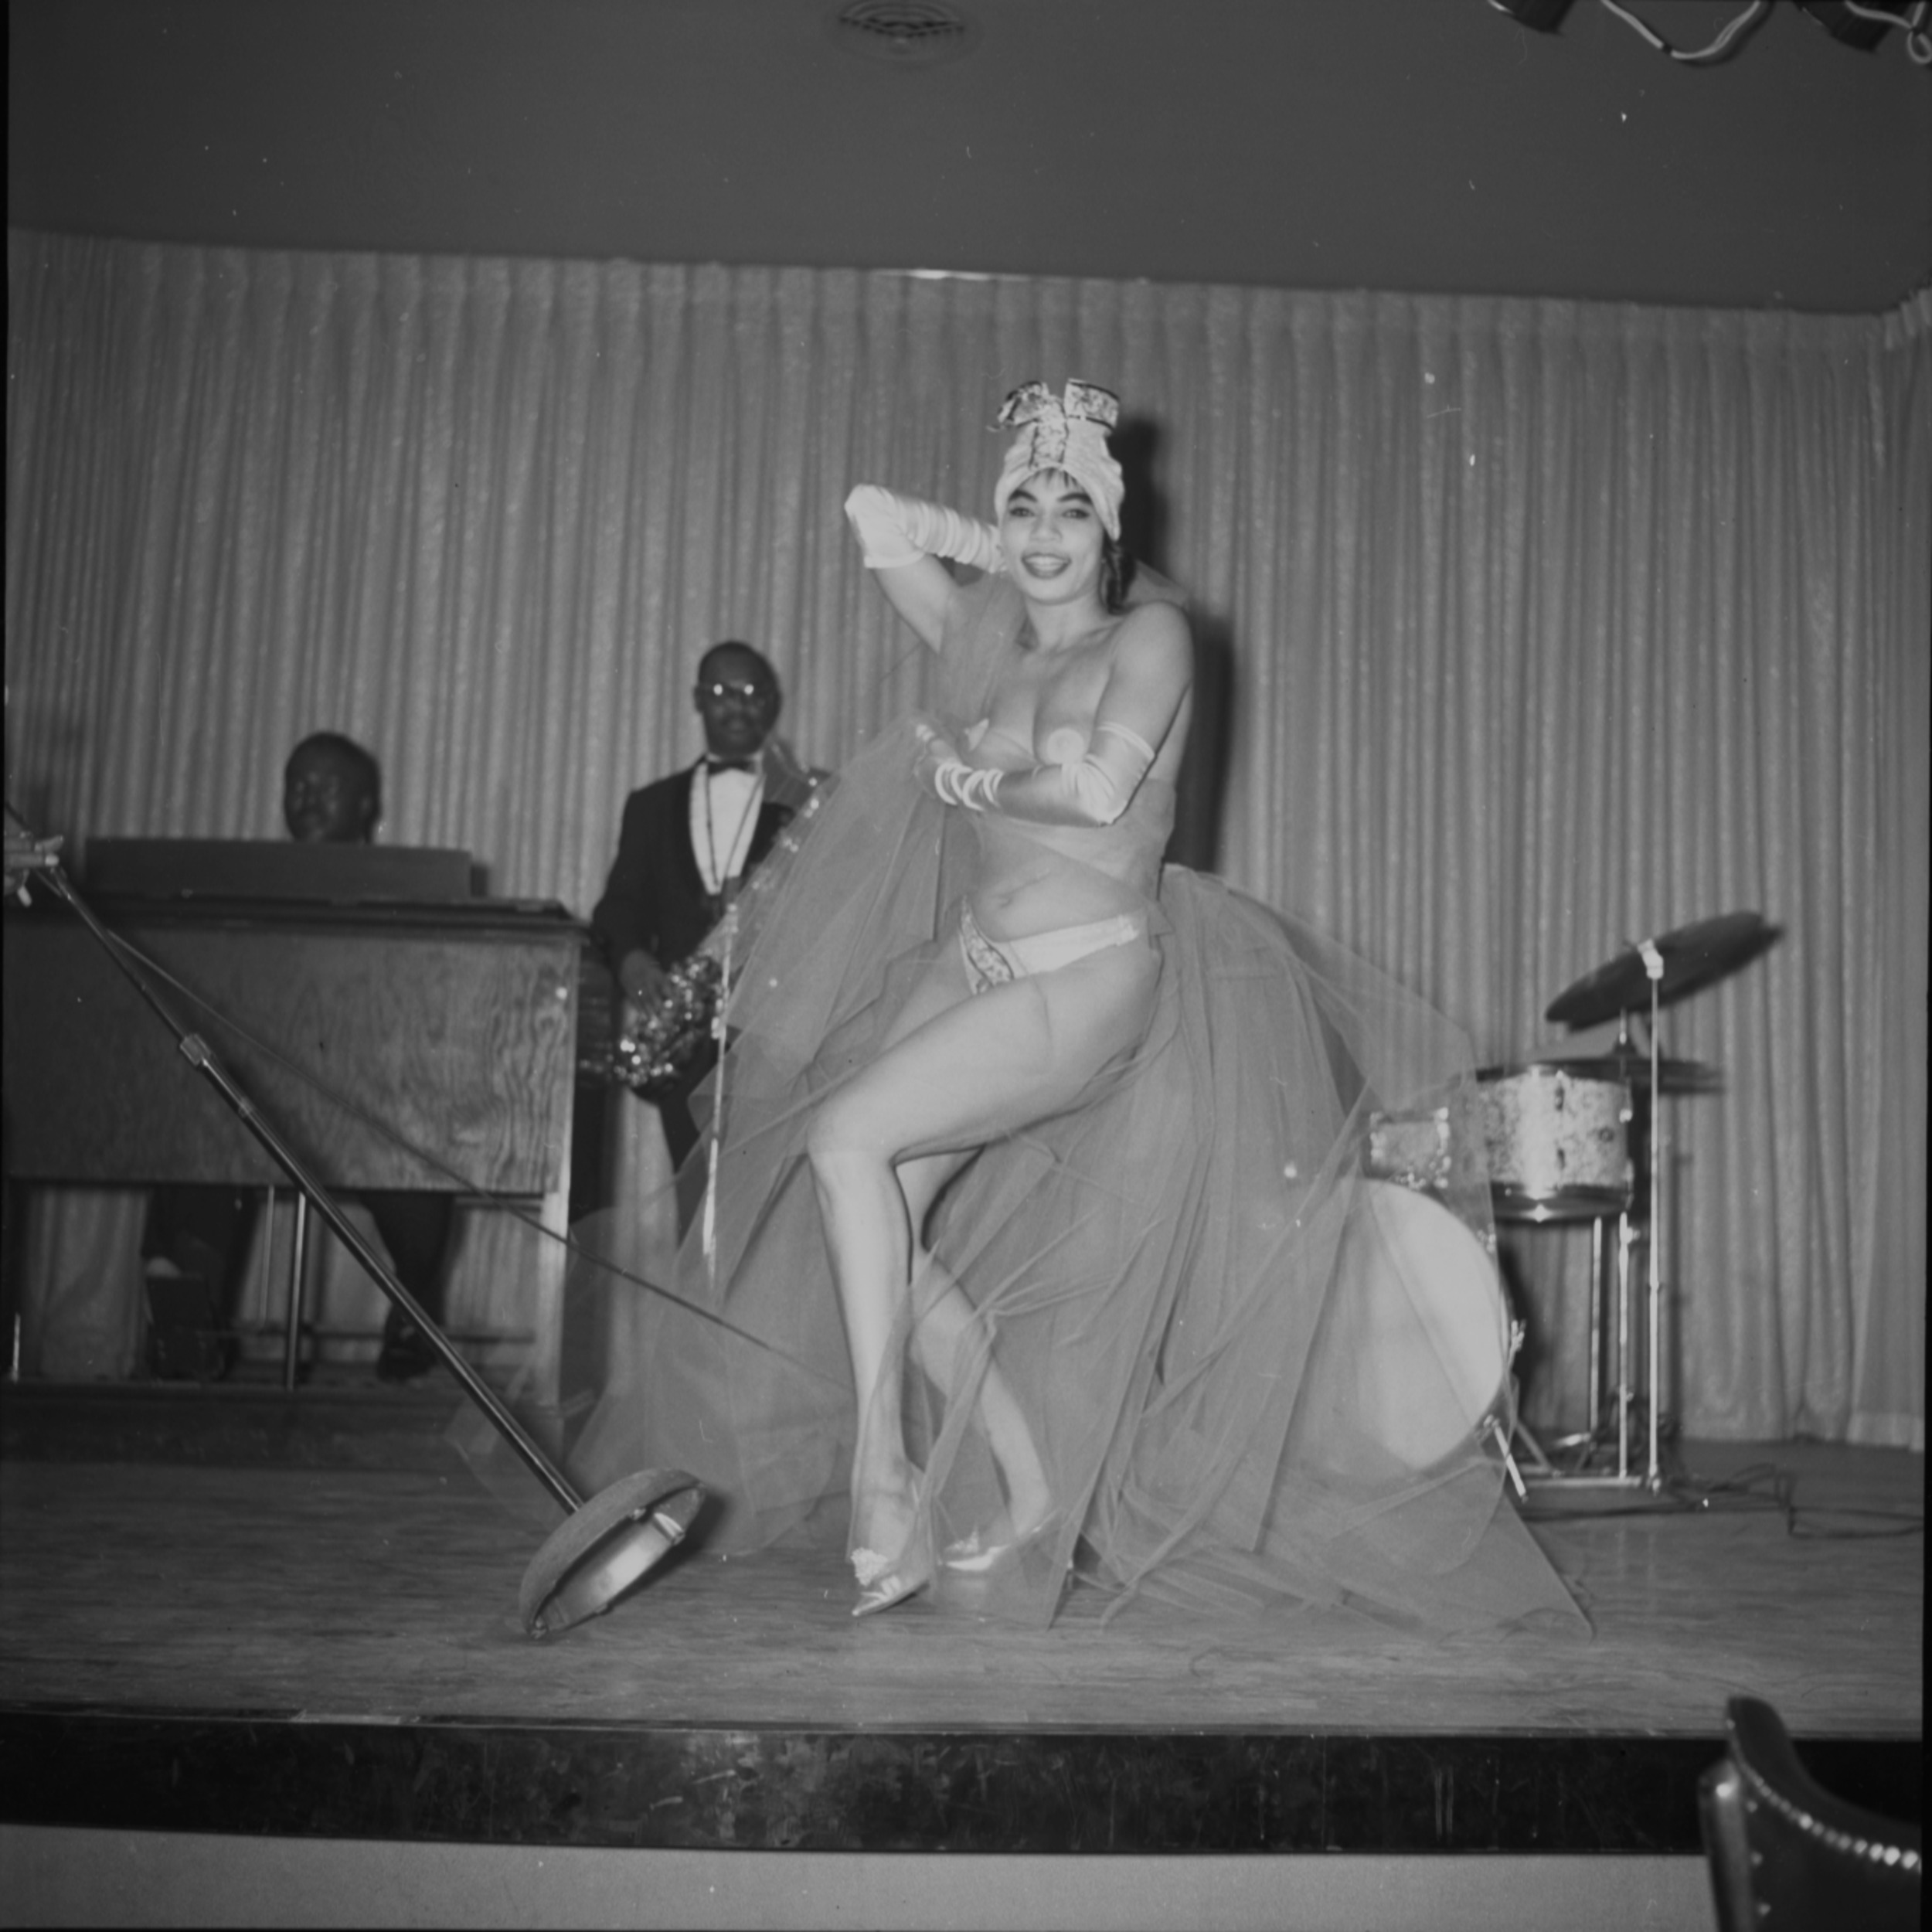 Dancer at Carver House, Image 10